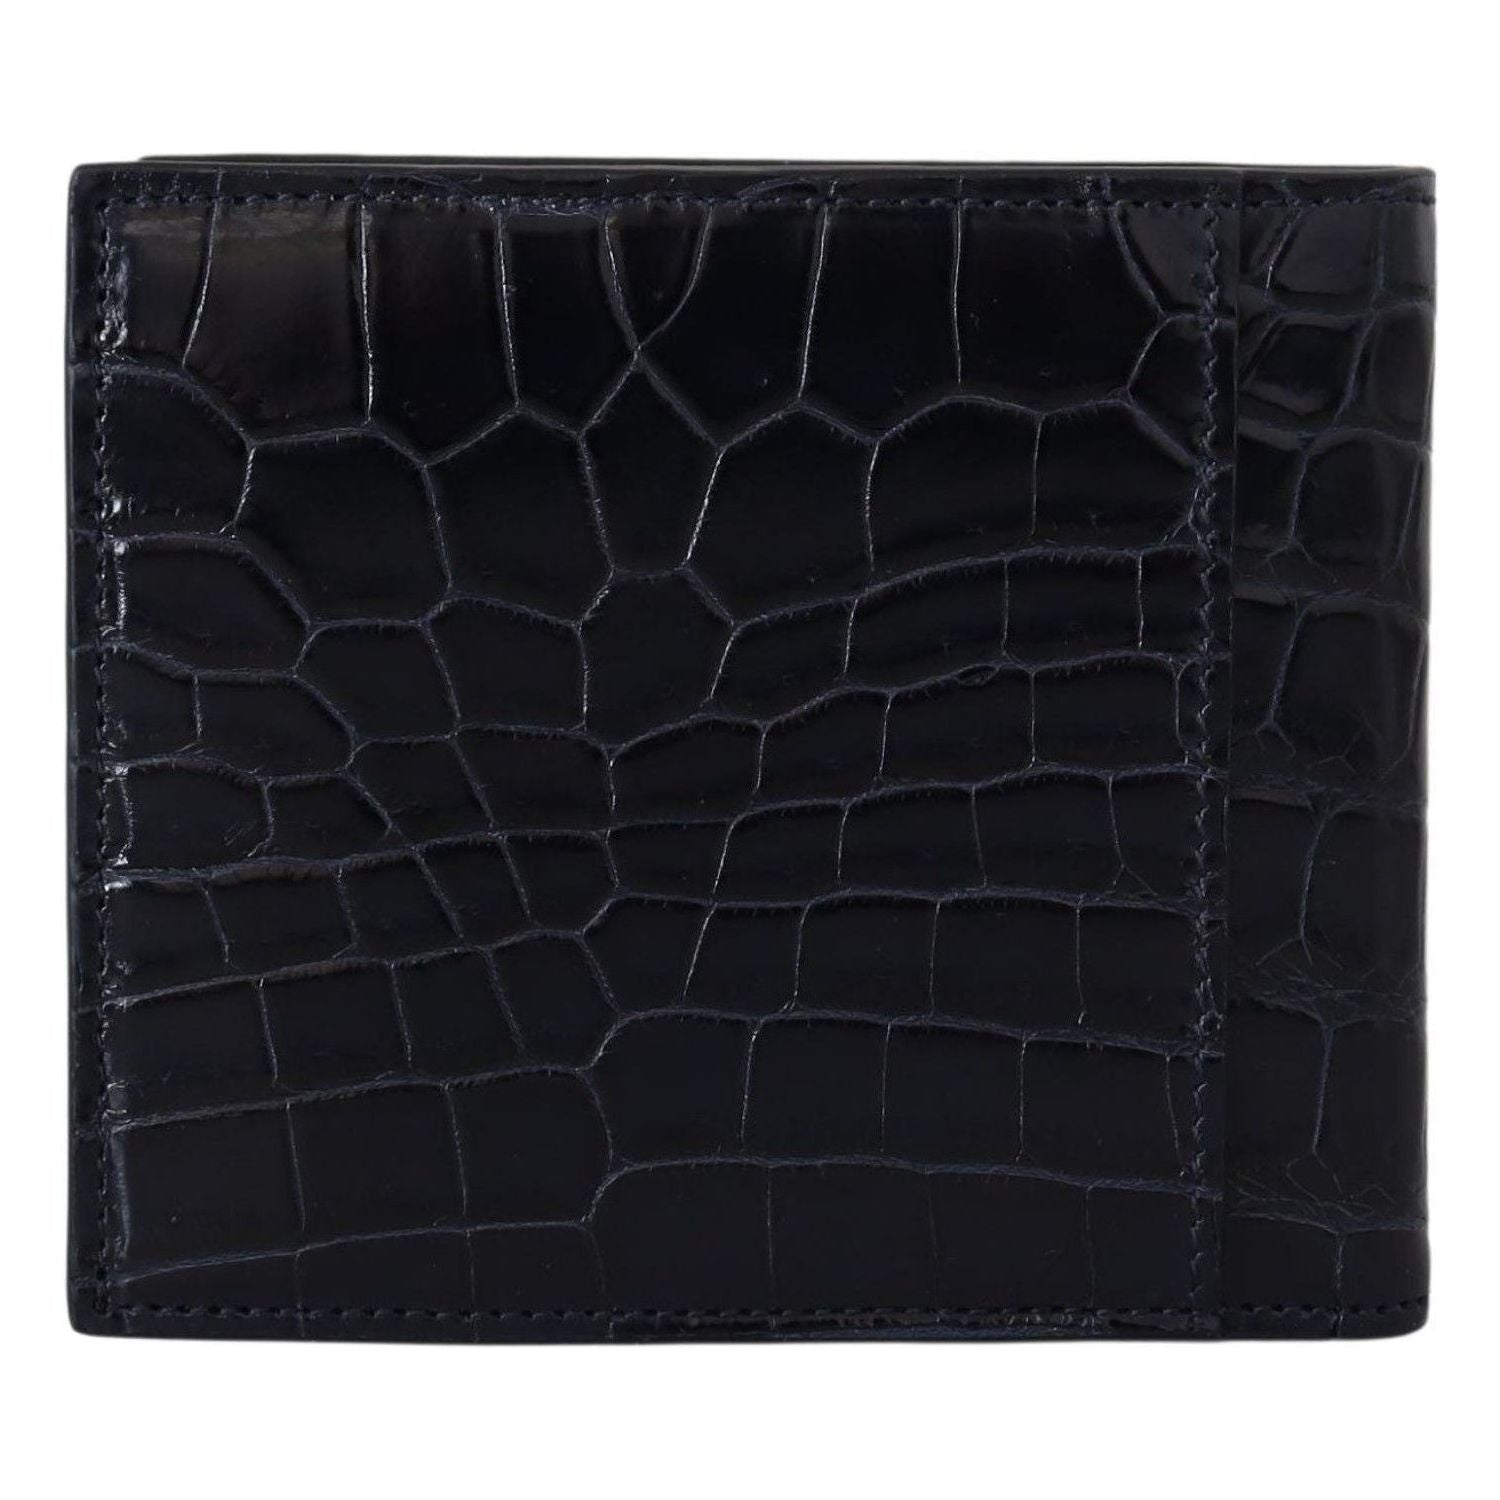 Dolce & Gabbana | Black Bifold Card Holder Men Exotic Leather Wallet | 1259.00 - McRichard Designer Brands